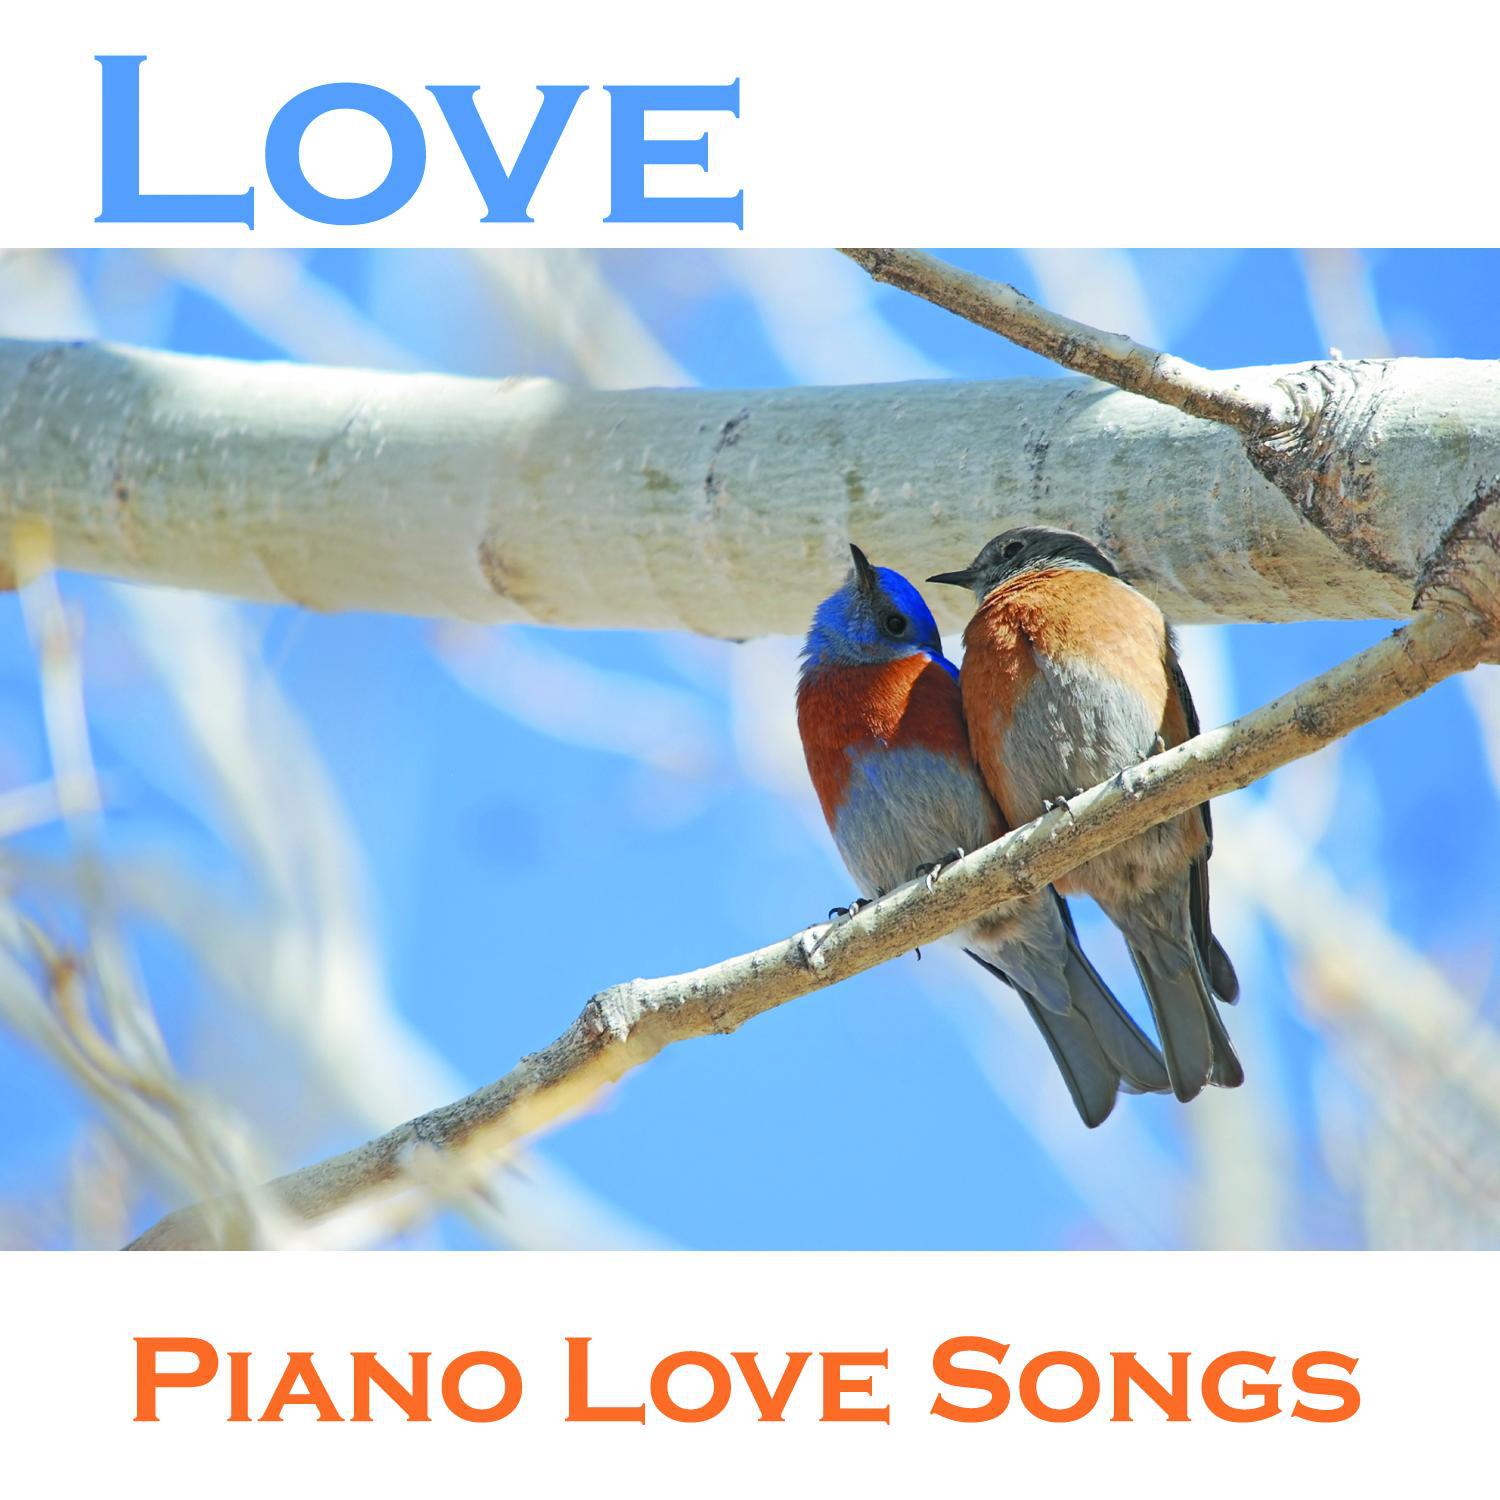 Love - Piano Love Songs